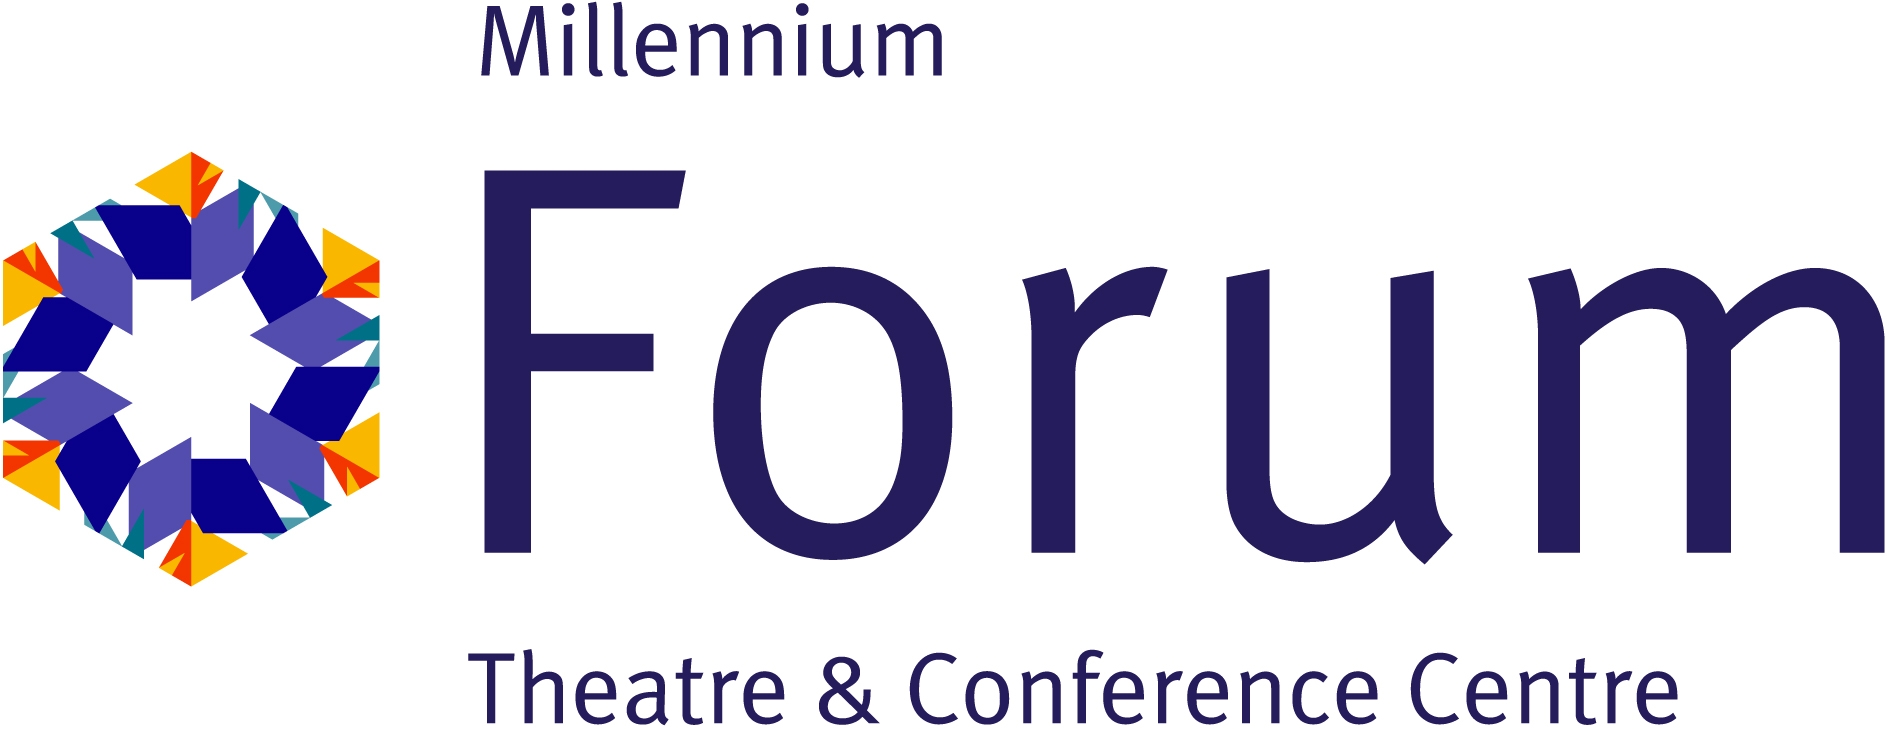 millennium forum 